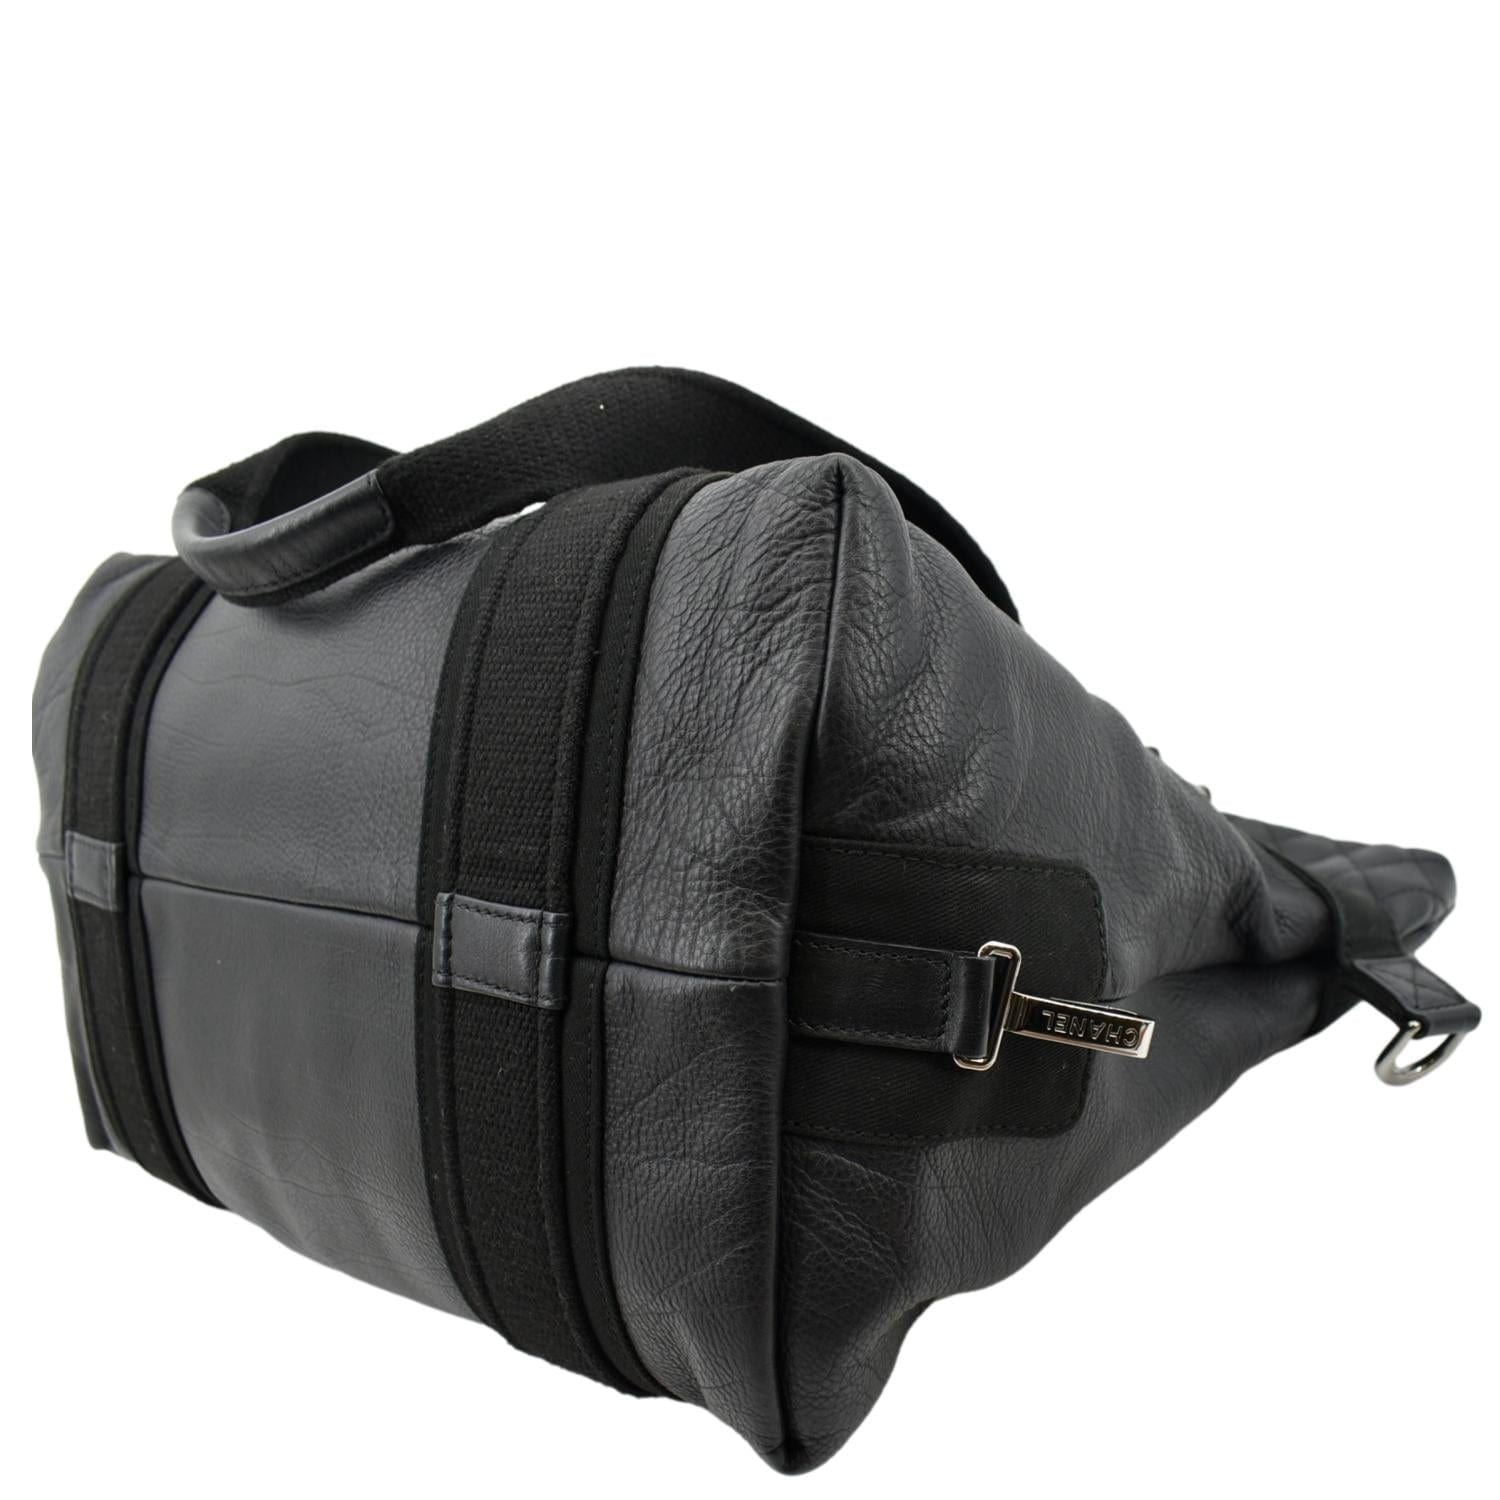 Chanel 2way Leather Shoulder Bag Black